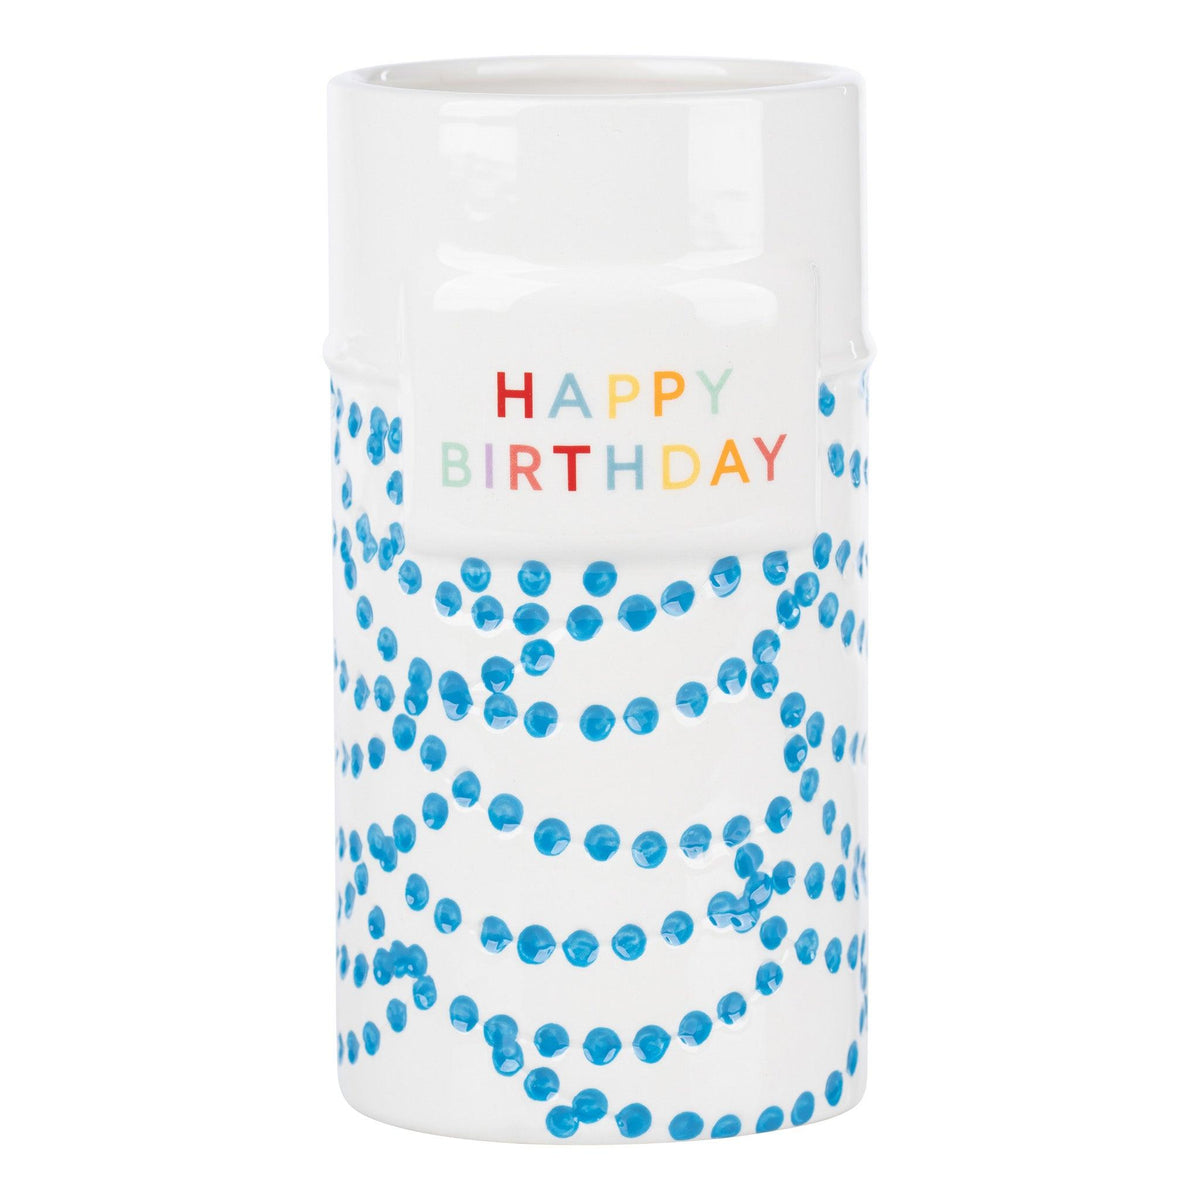 Happy Birthday Vase - GLORY HAUS 